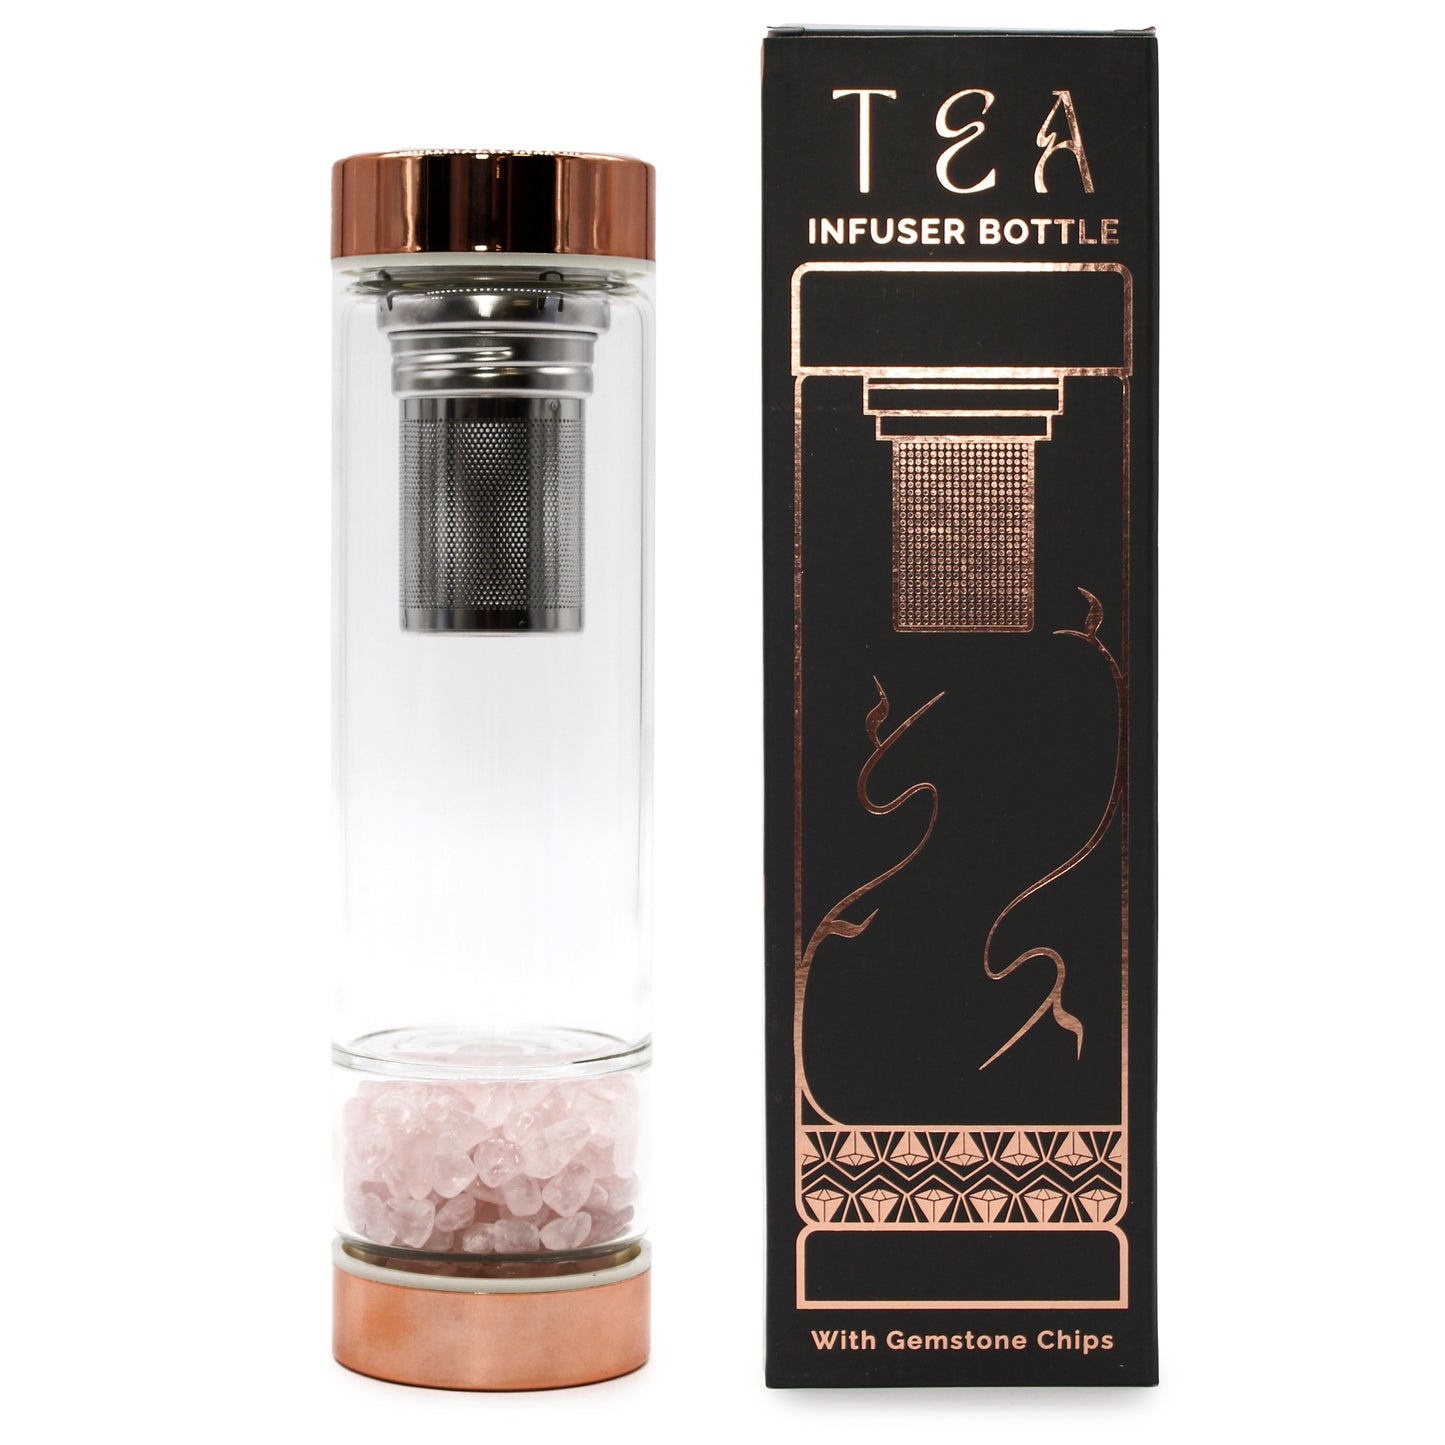 Crystal Tea Infuser Bottle